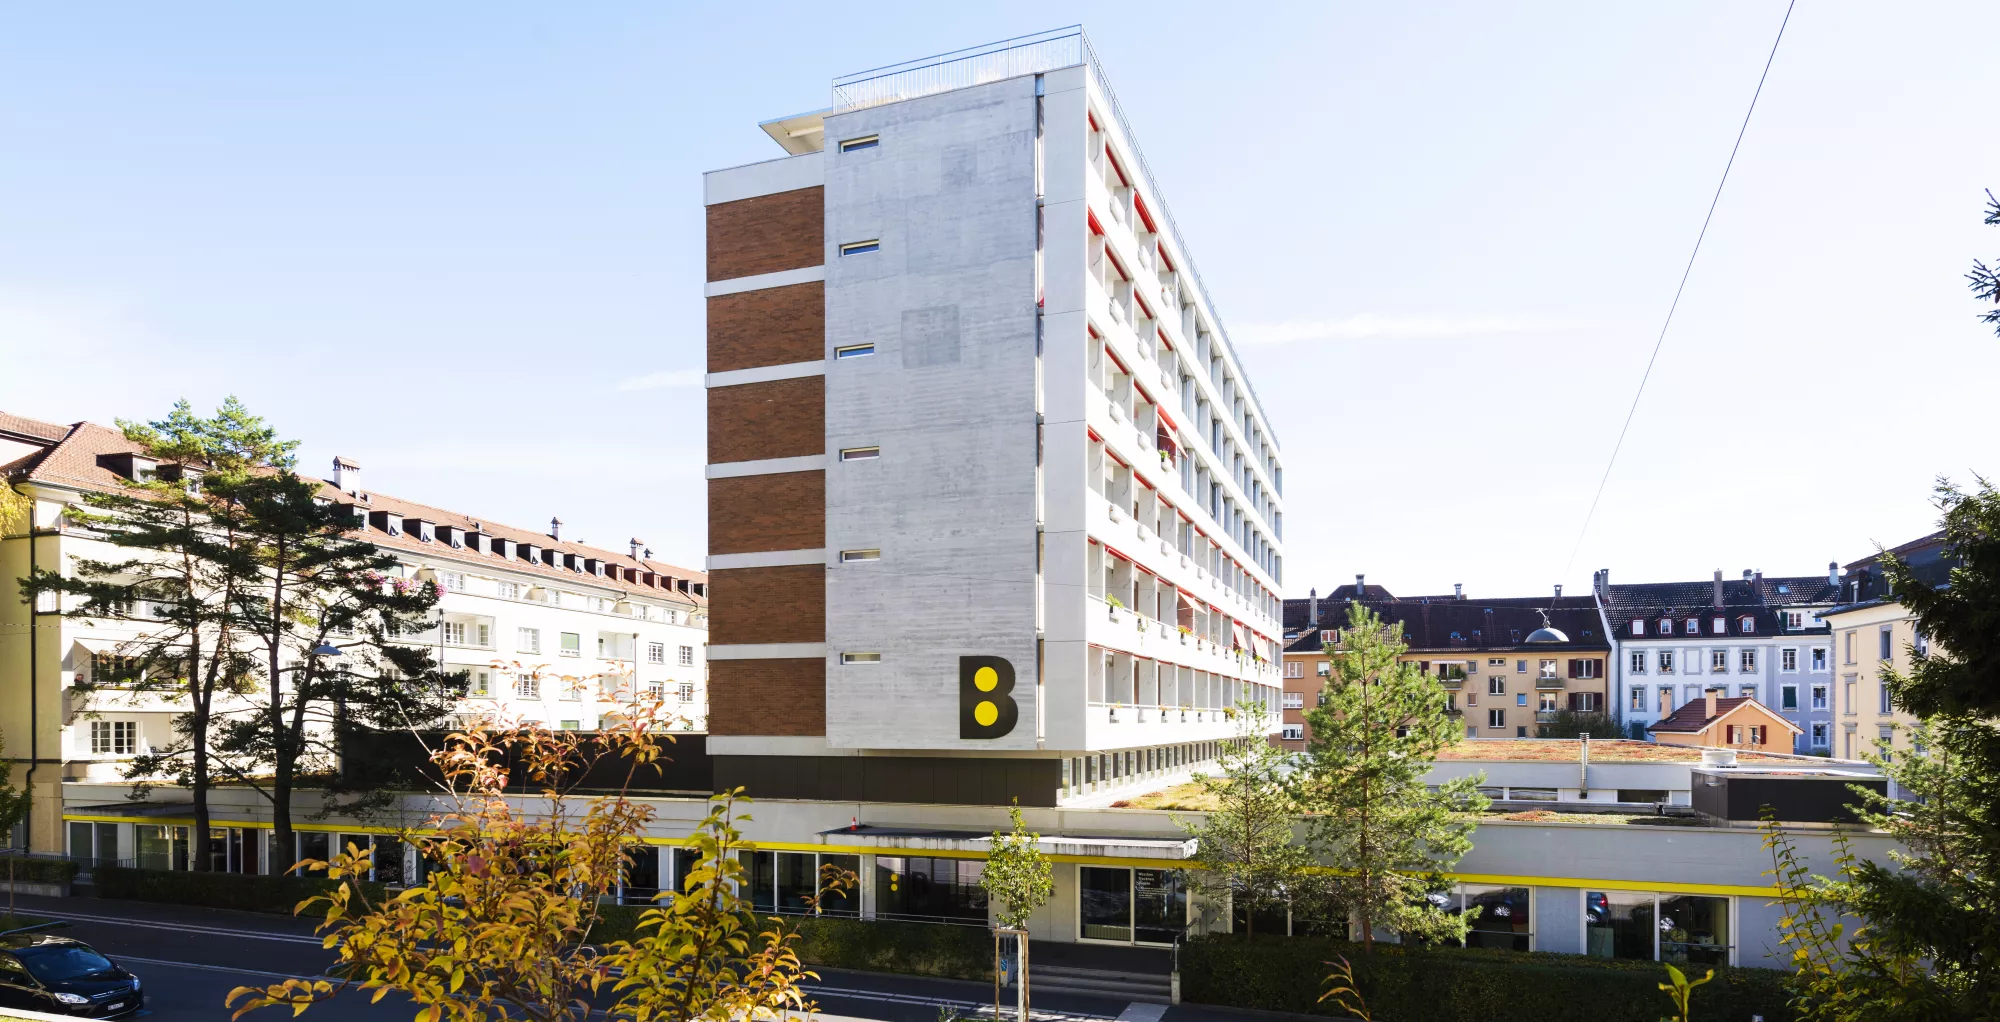 Bild zeigt das Gebäude vom Blinden-und Behindertenzentrum Bern